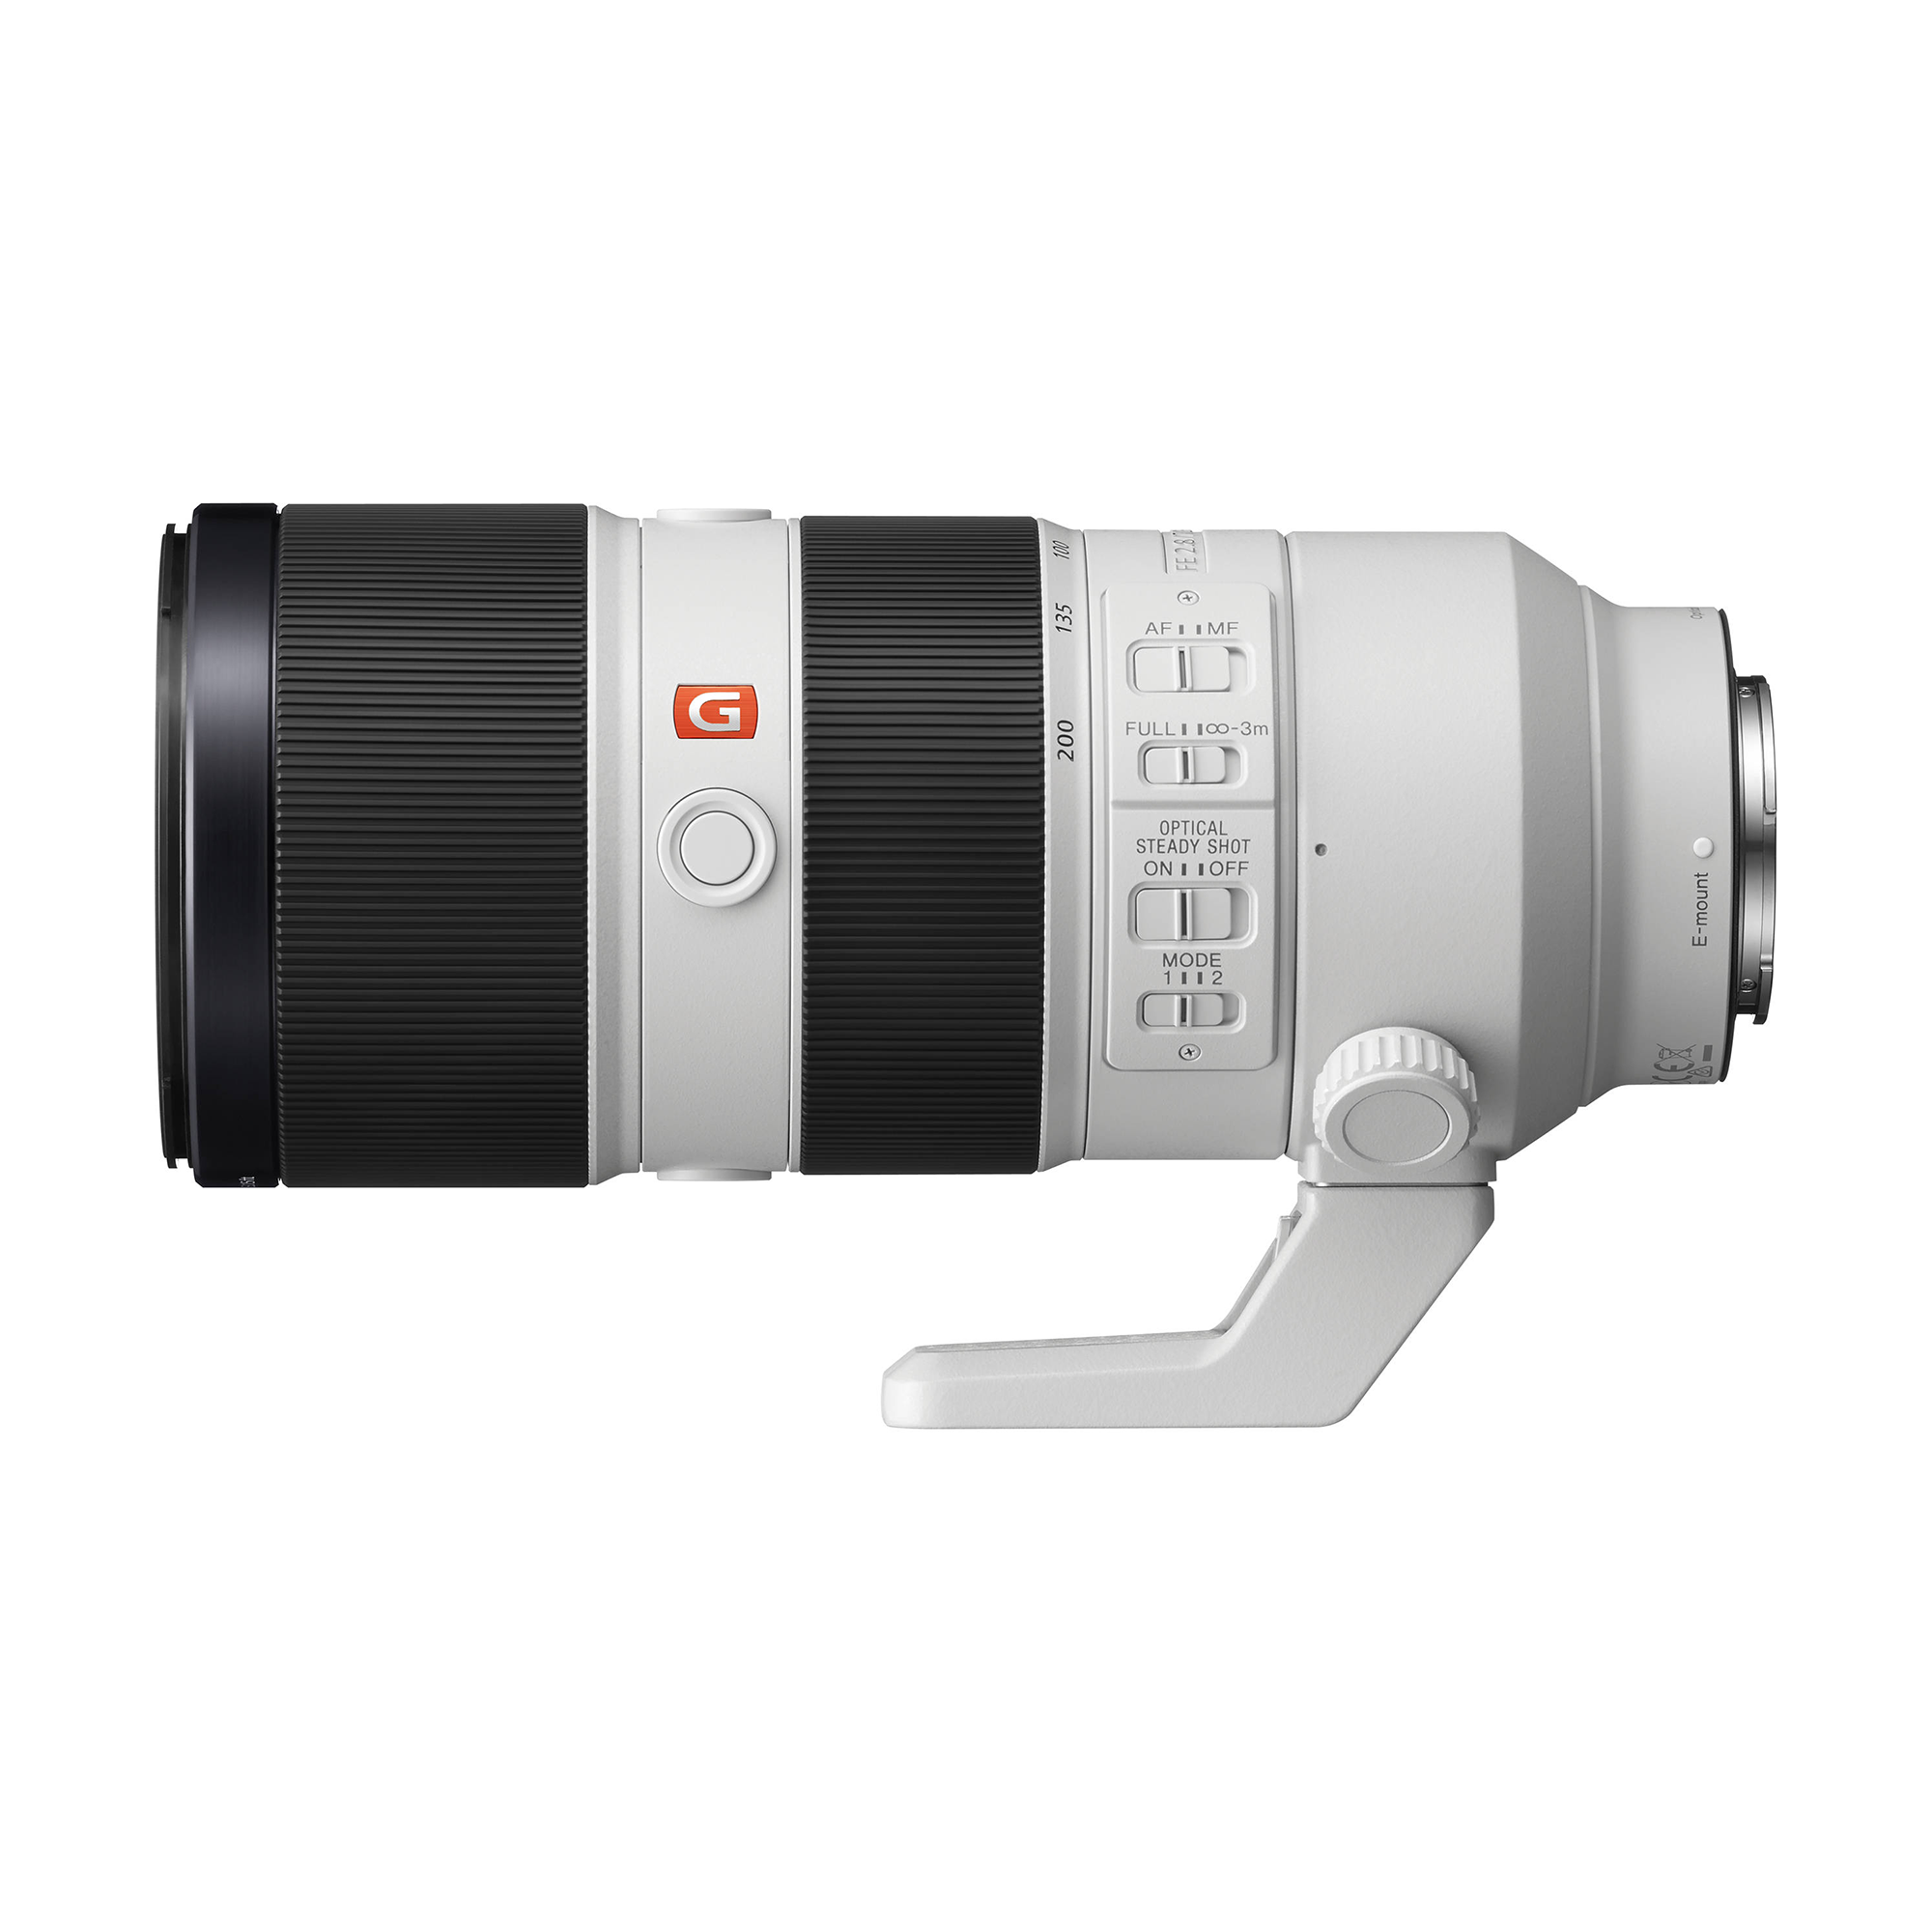 Sony FE 70-200mm f/2.8 GM OSS Lens